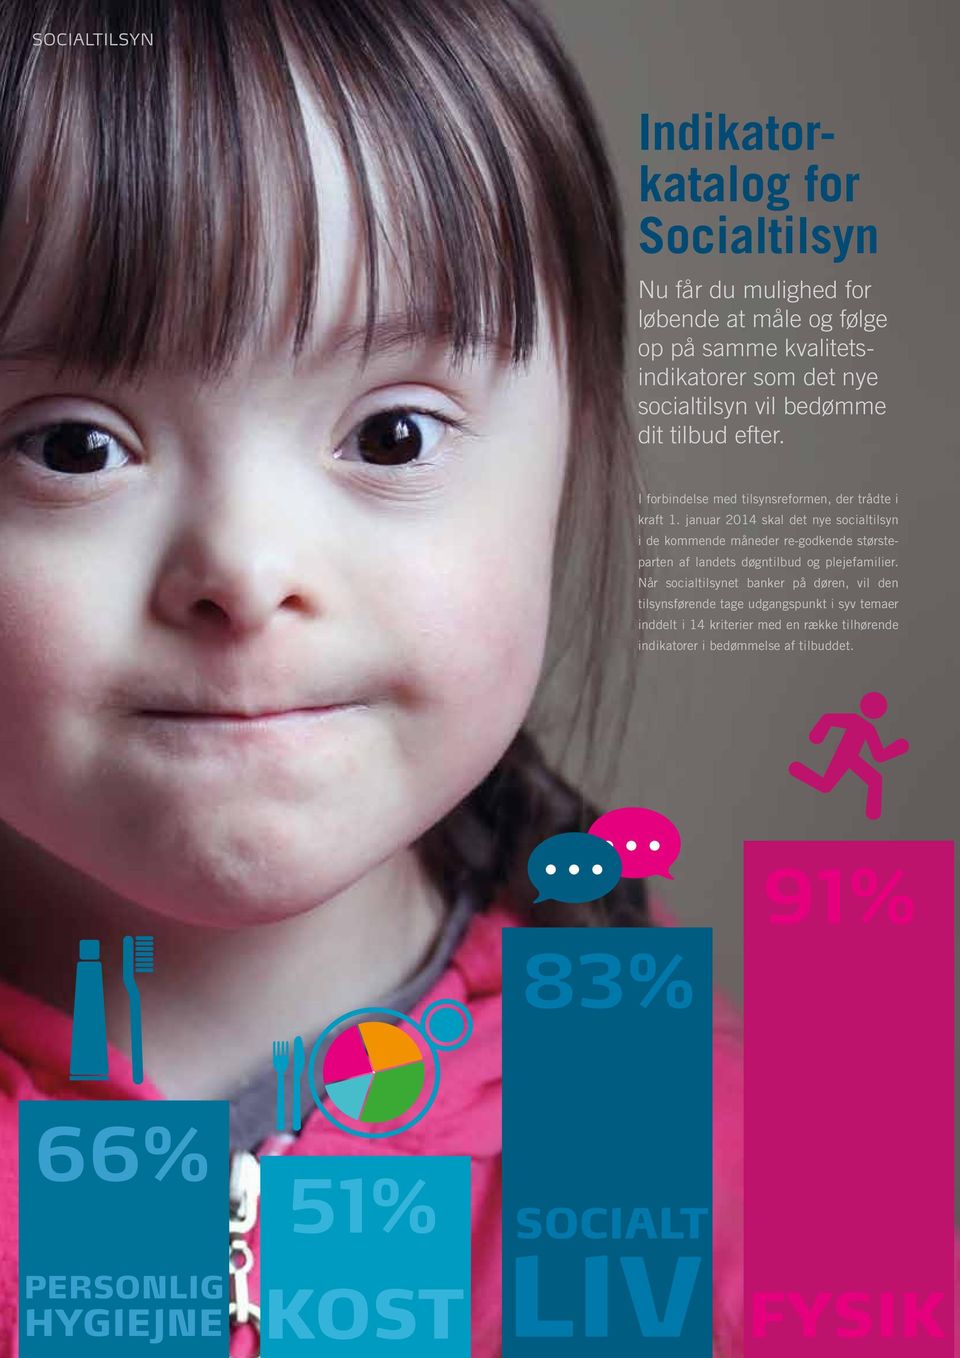 januar 2014 skal det nye socialtilsyn i de kommende måneder re-godkende størsteparten af landets døgntilbud og plejefamilier.